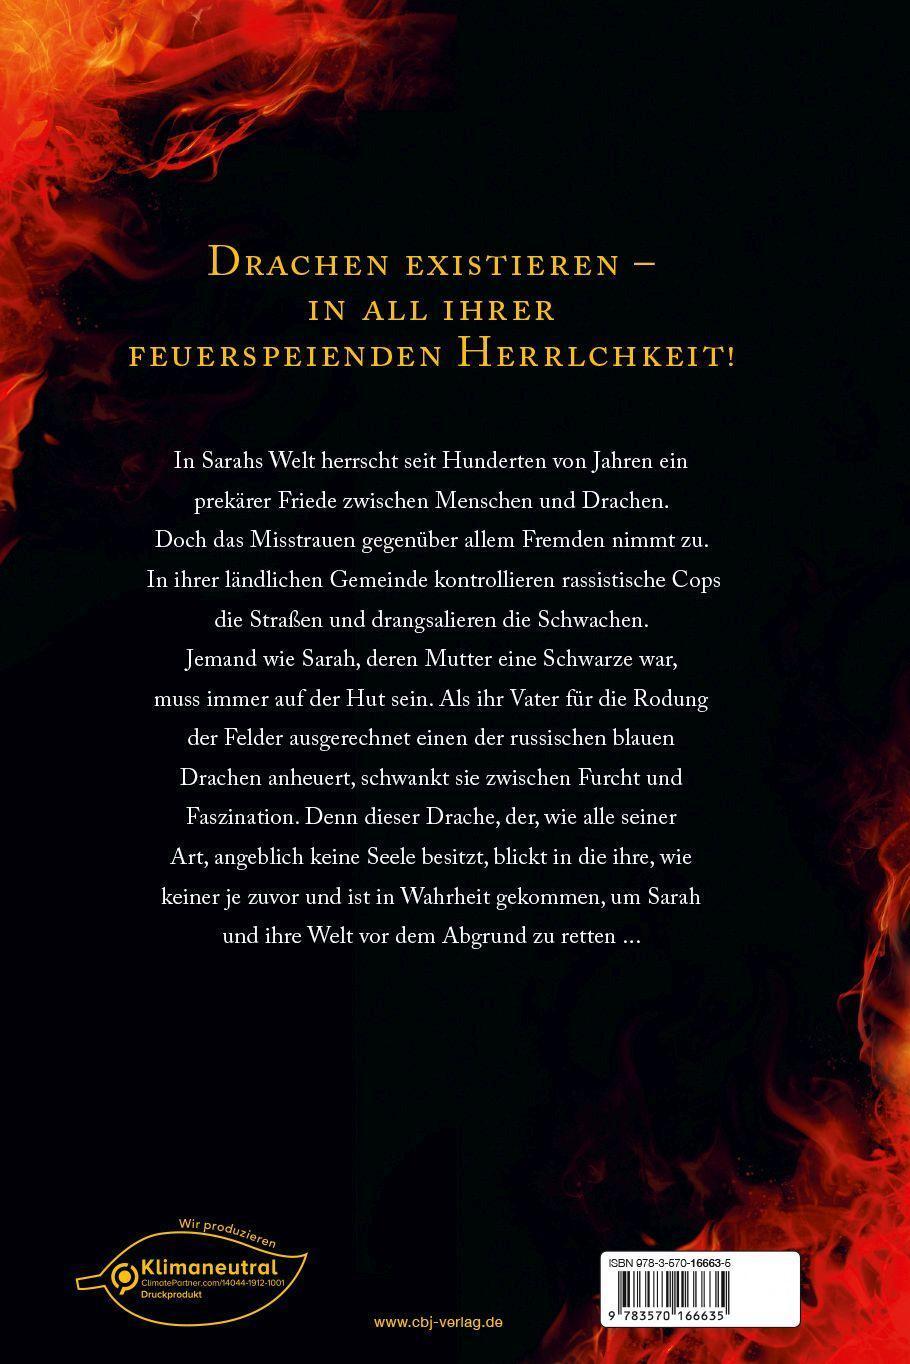 Bild: 9783570166635 | Burn - Die Welt brennt wie Feuer | Patrick Ness | Buch | Deutsch | cbj